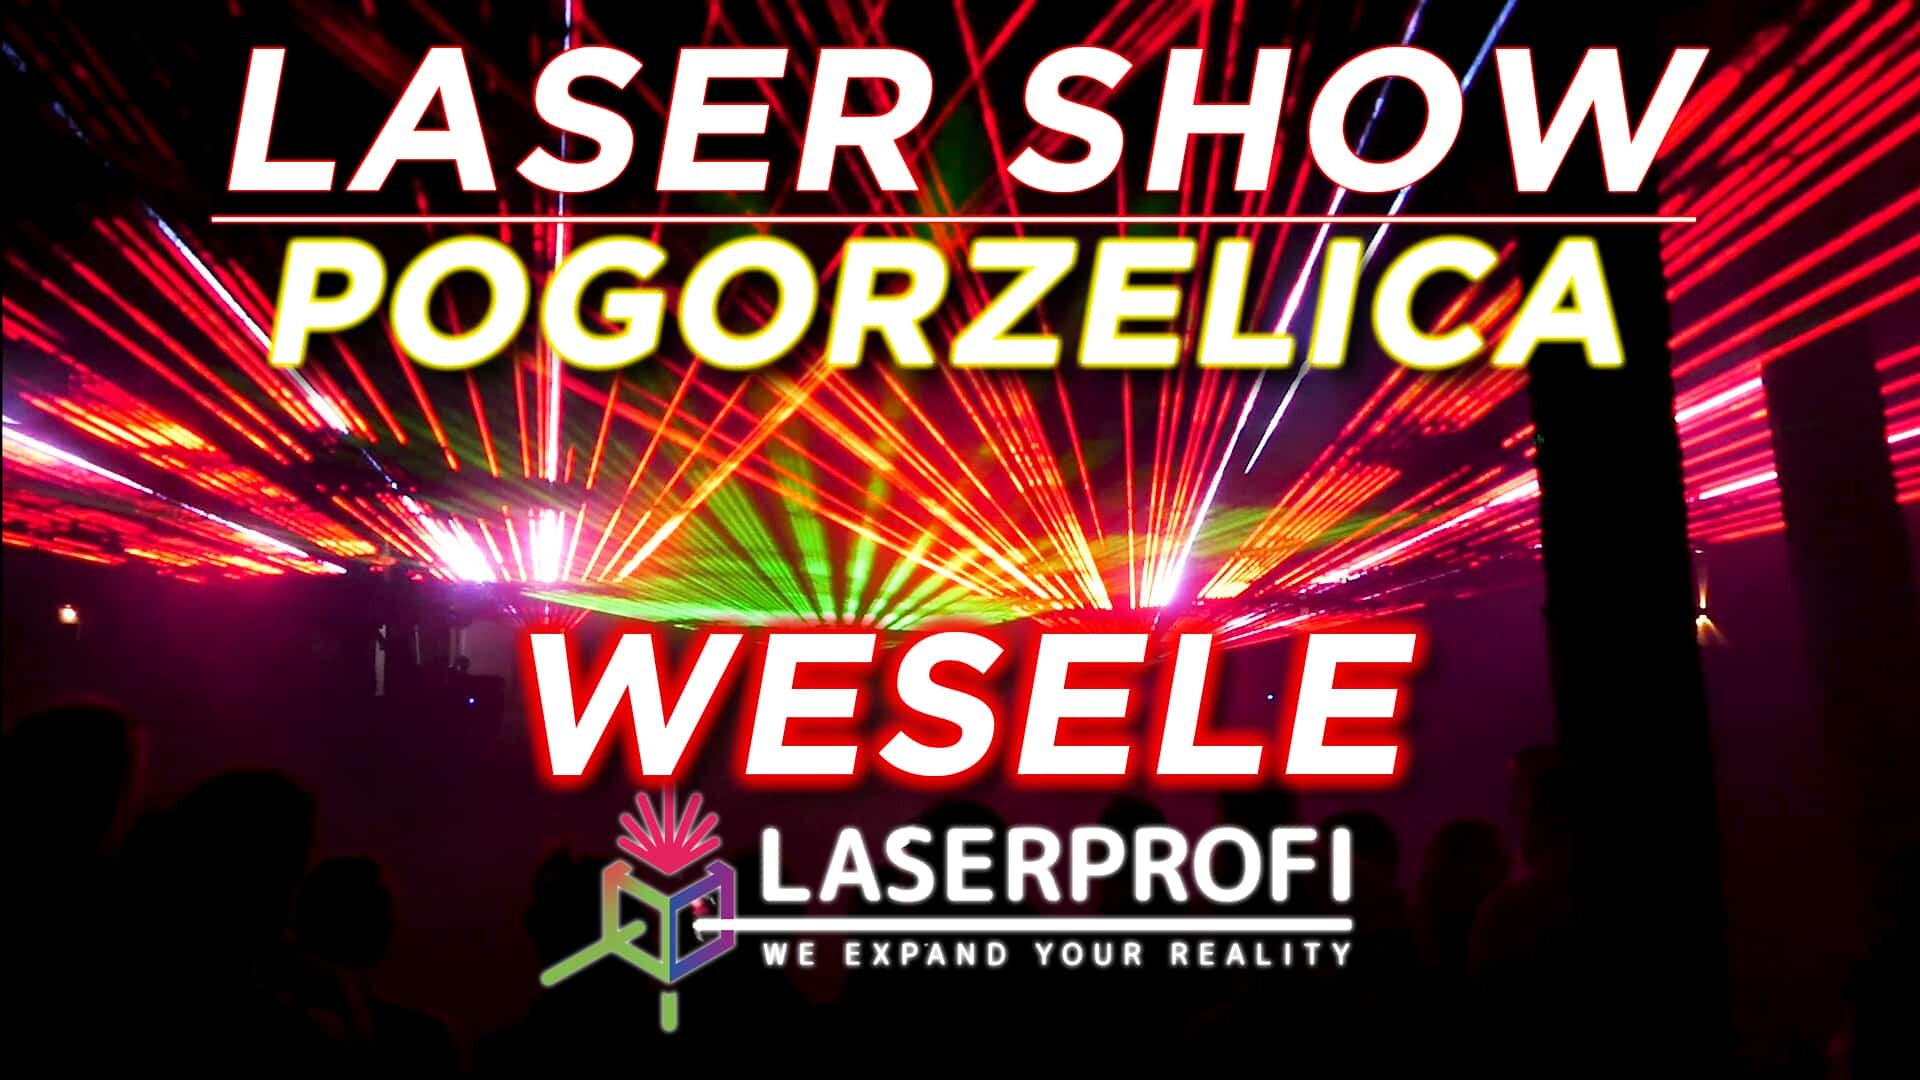 Pokaz laserowy na weselu [Pogorzelica] - (C-bool-David Guetta-Dave Darell)